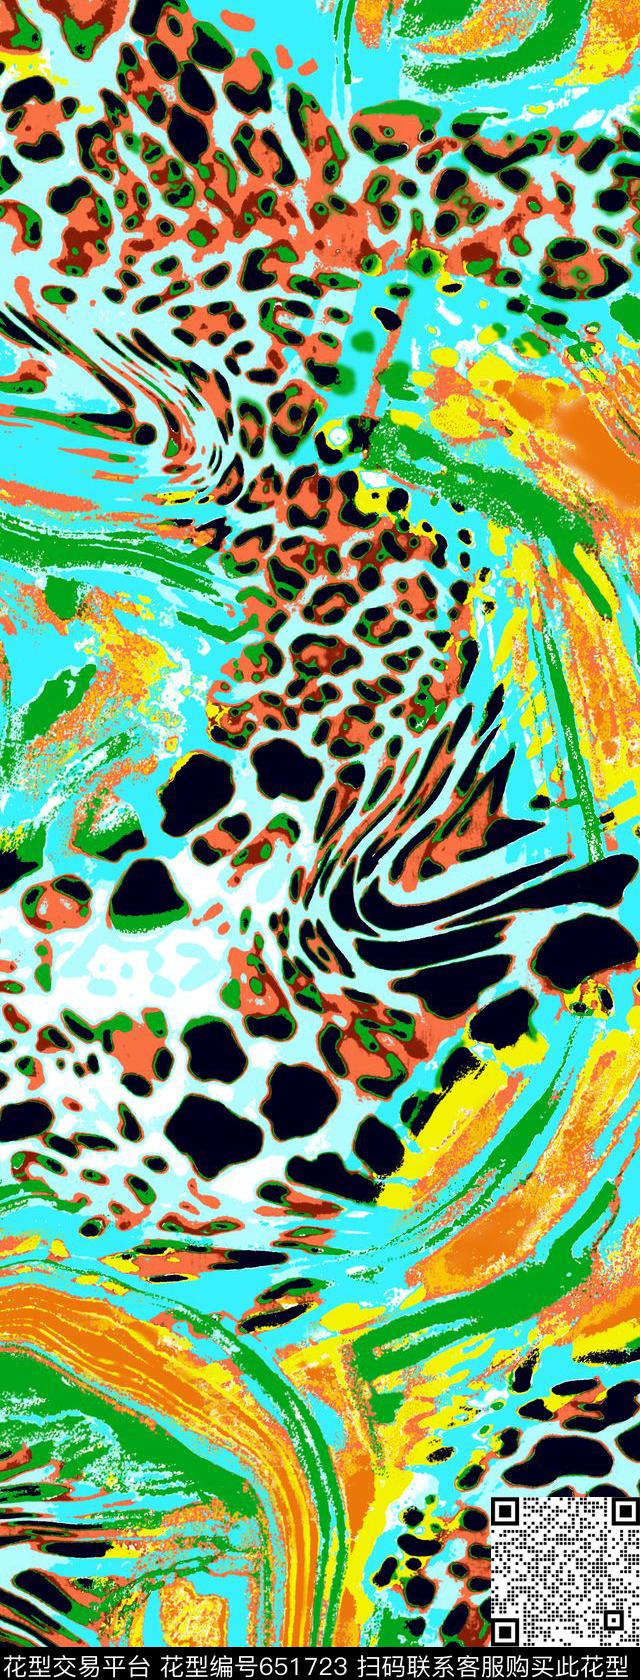 06222.tif - 651723 - 清晰大牌 豹点 豹纹 - 传统印花花型 － 泳装花型设计 － 瓦栏